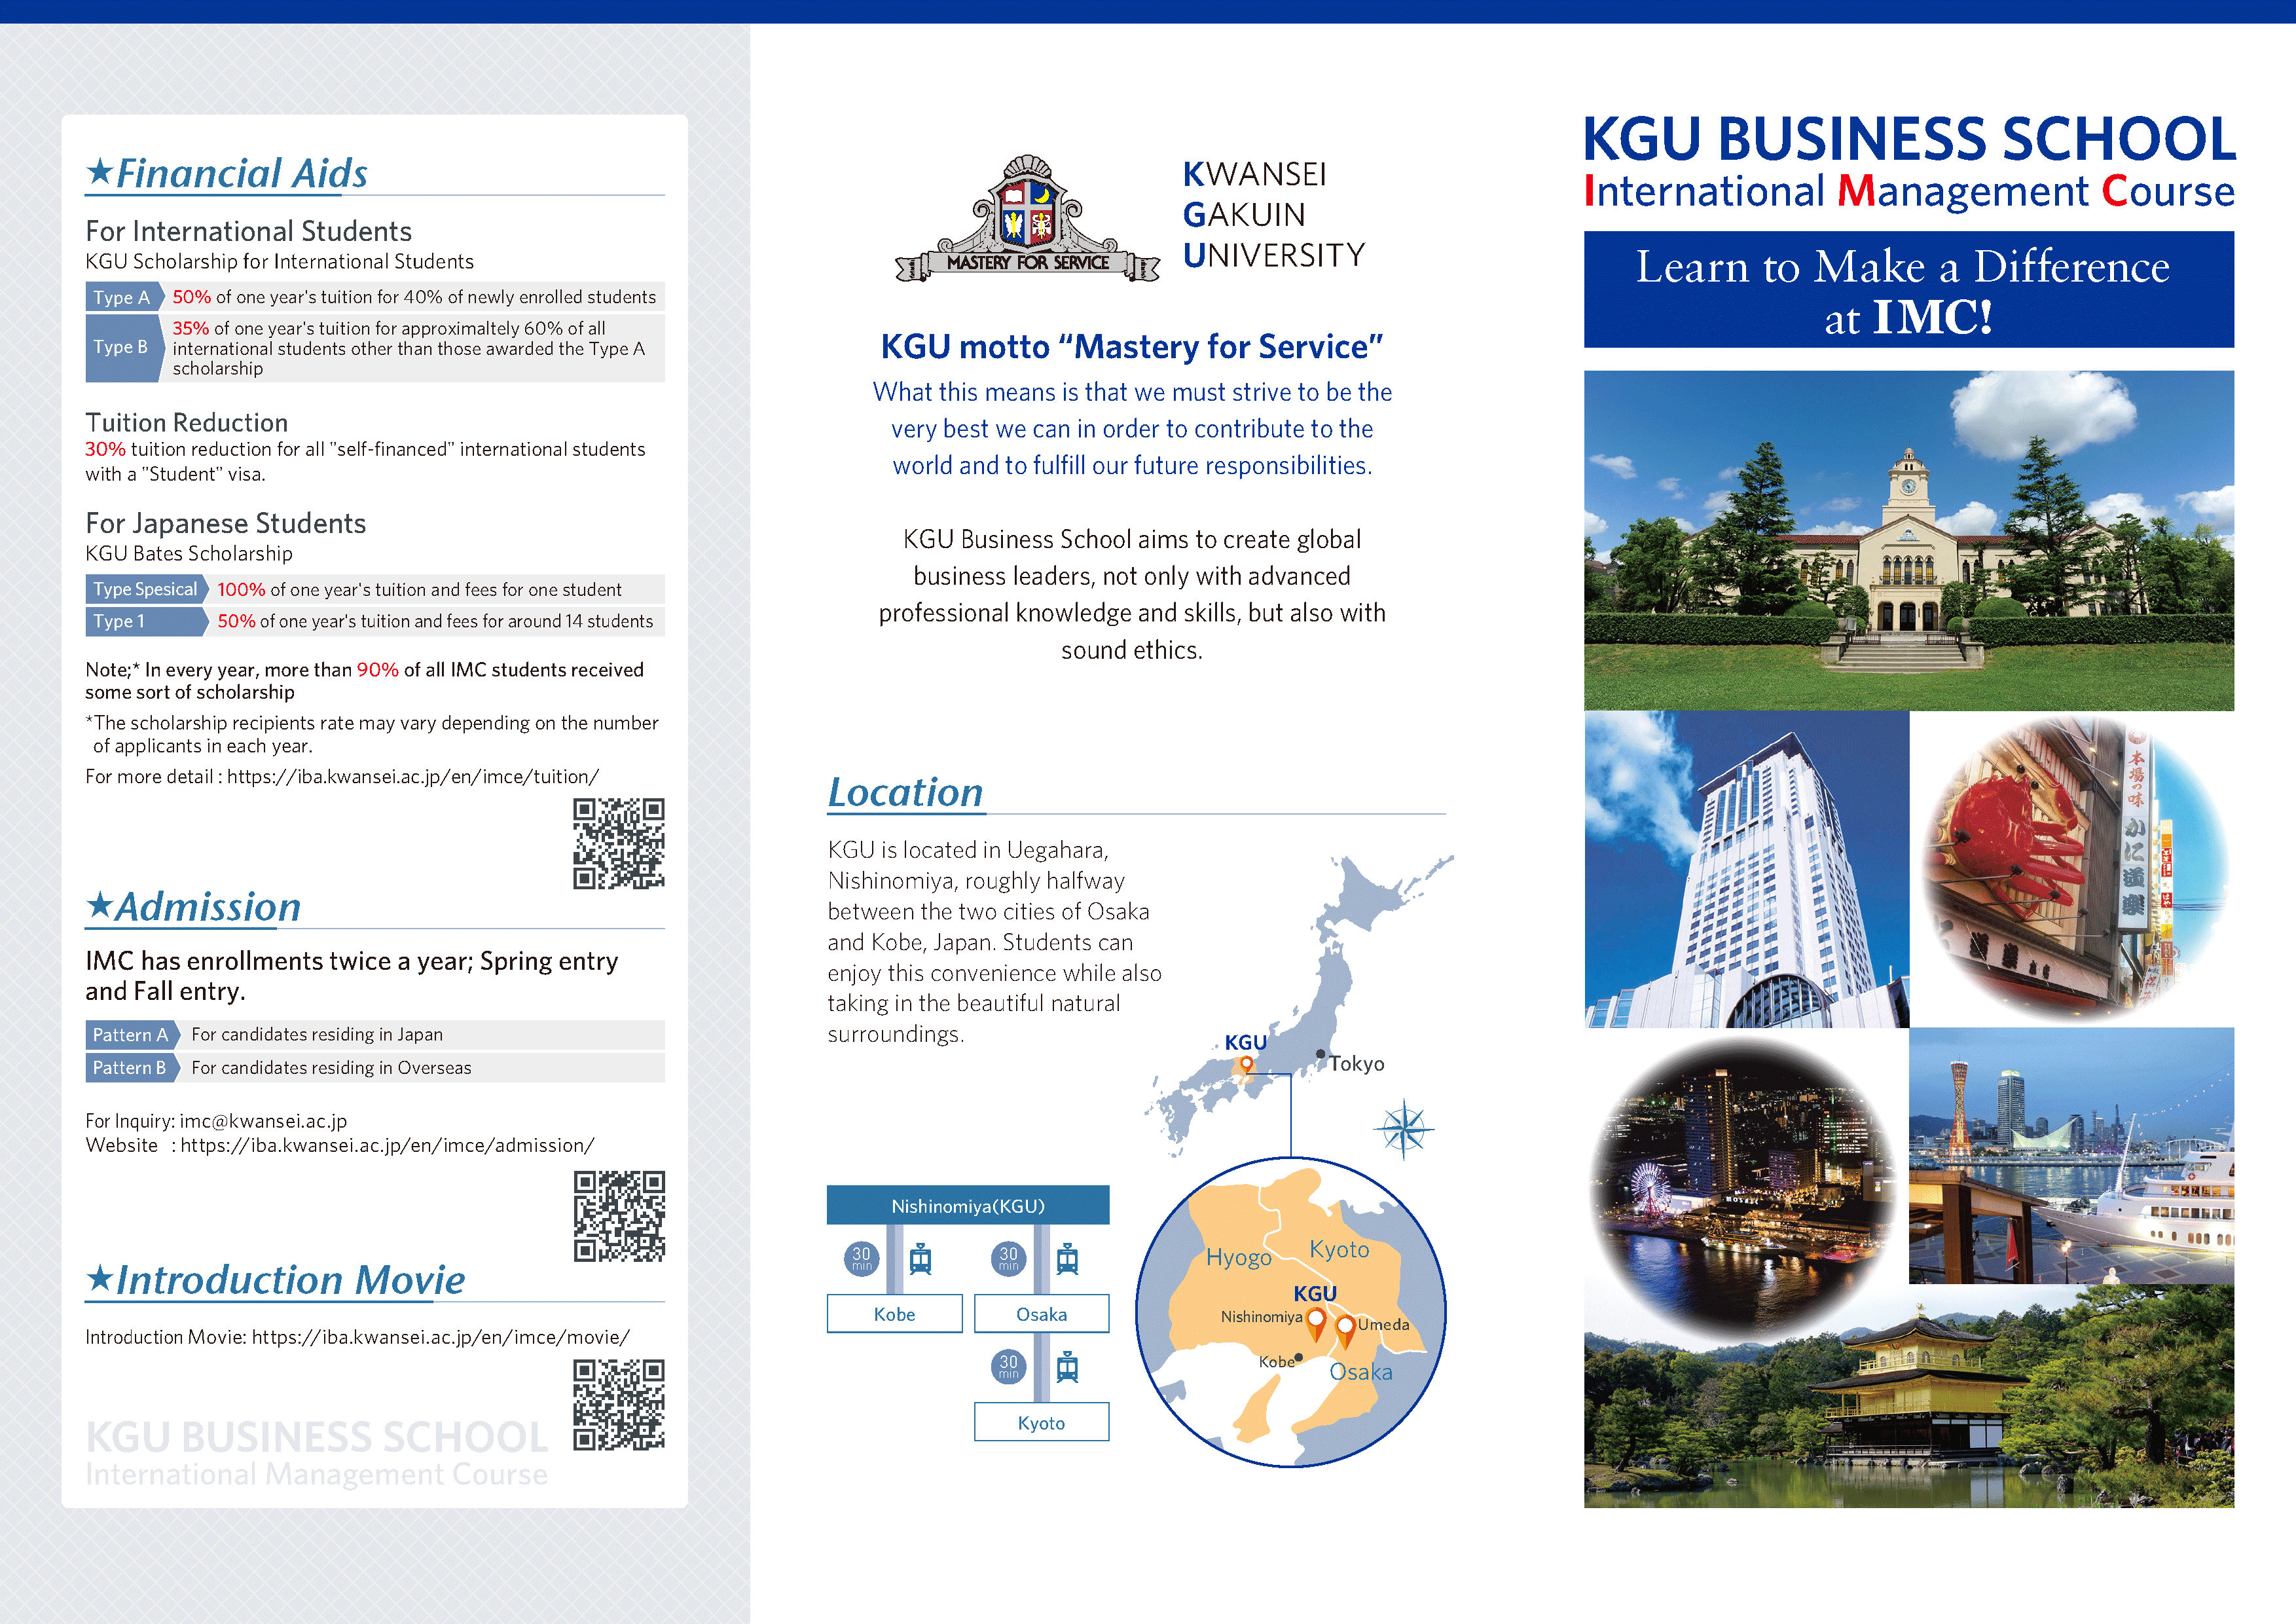 Kasnsei Gakuin University